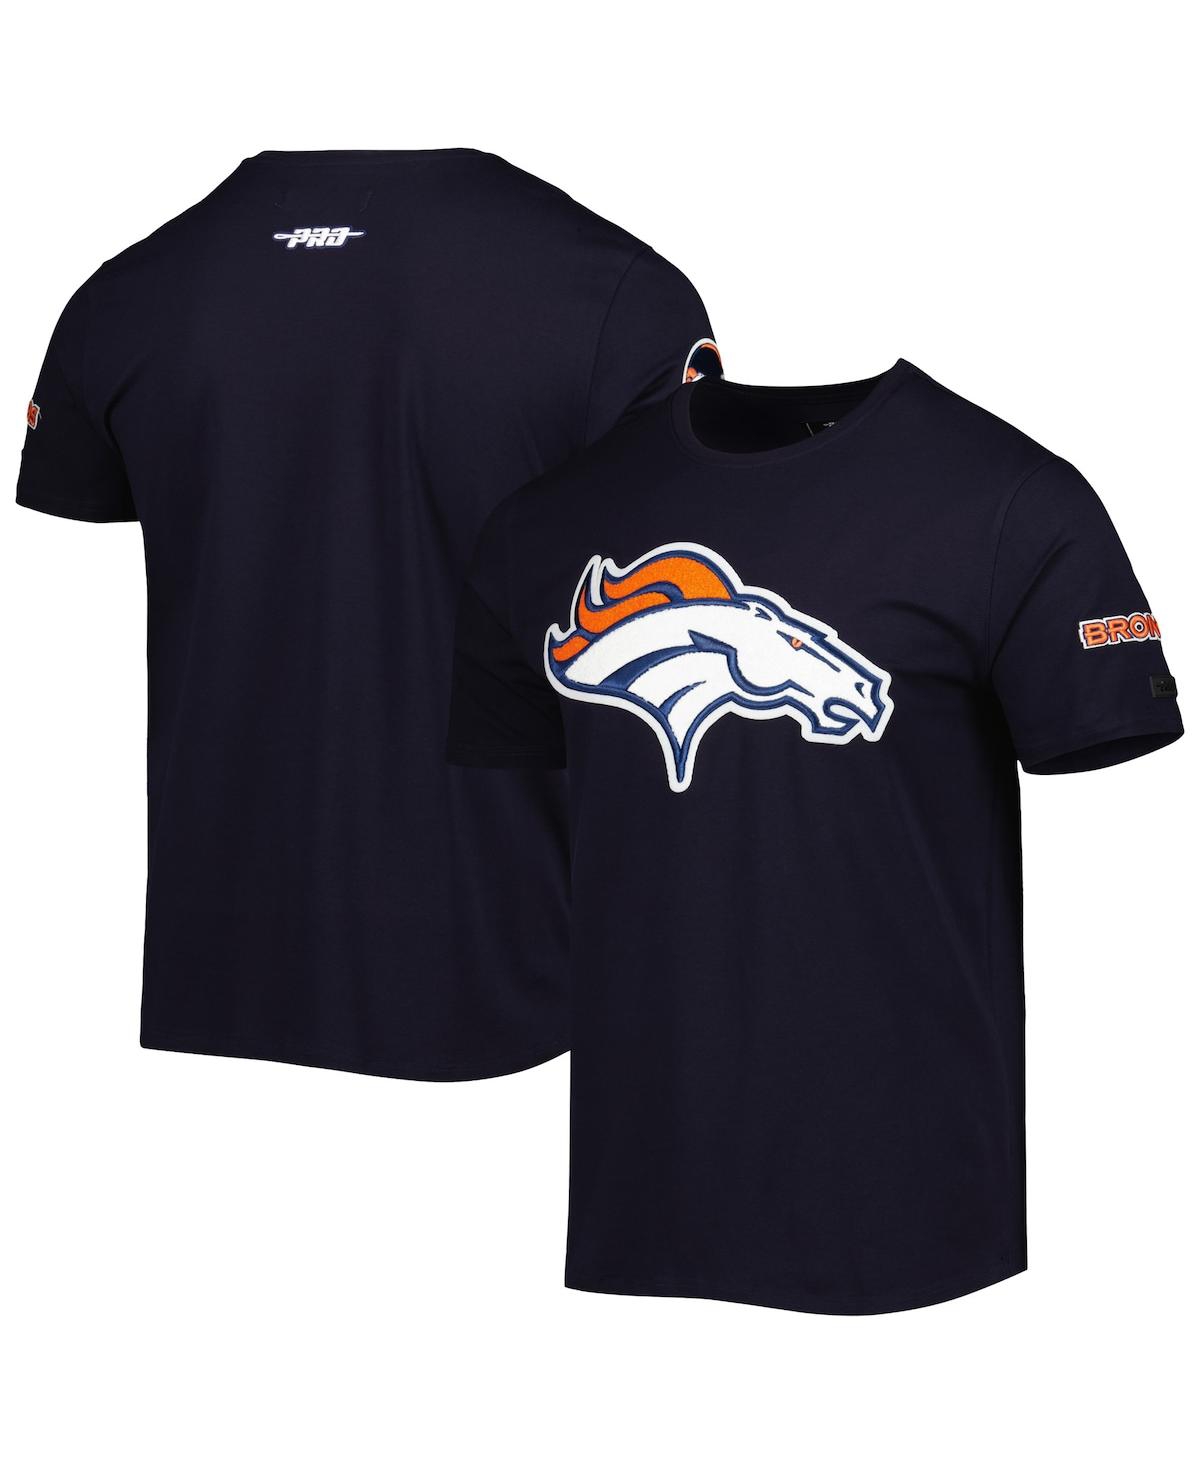 Men's Pro Standard Navy Denver Broncos Mash Up T-shirt - Navy